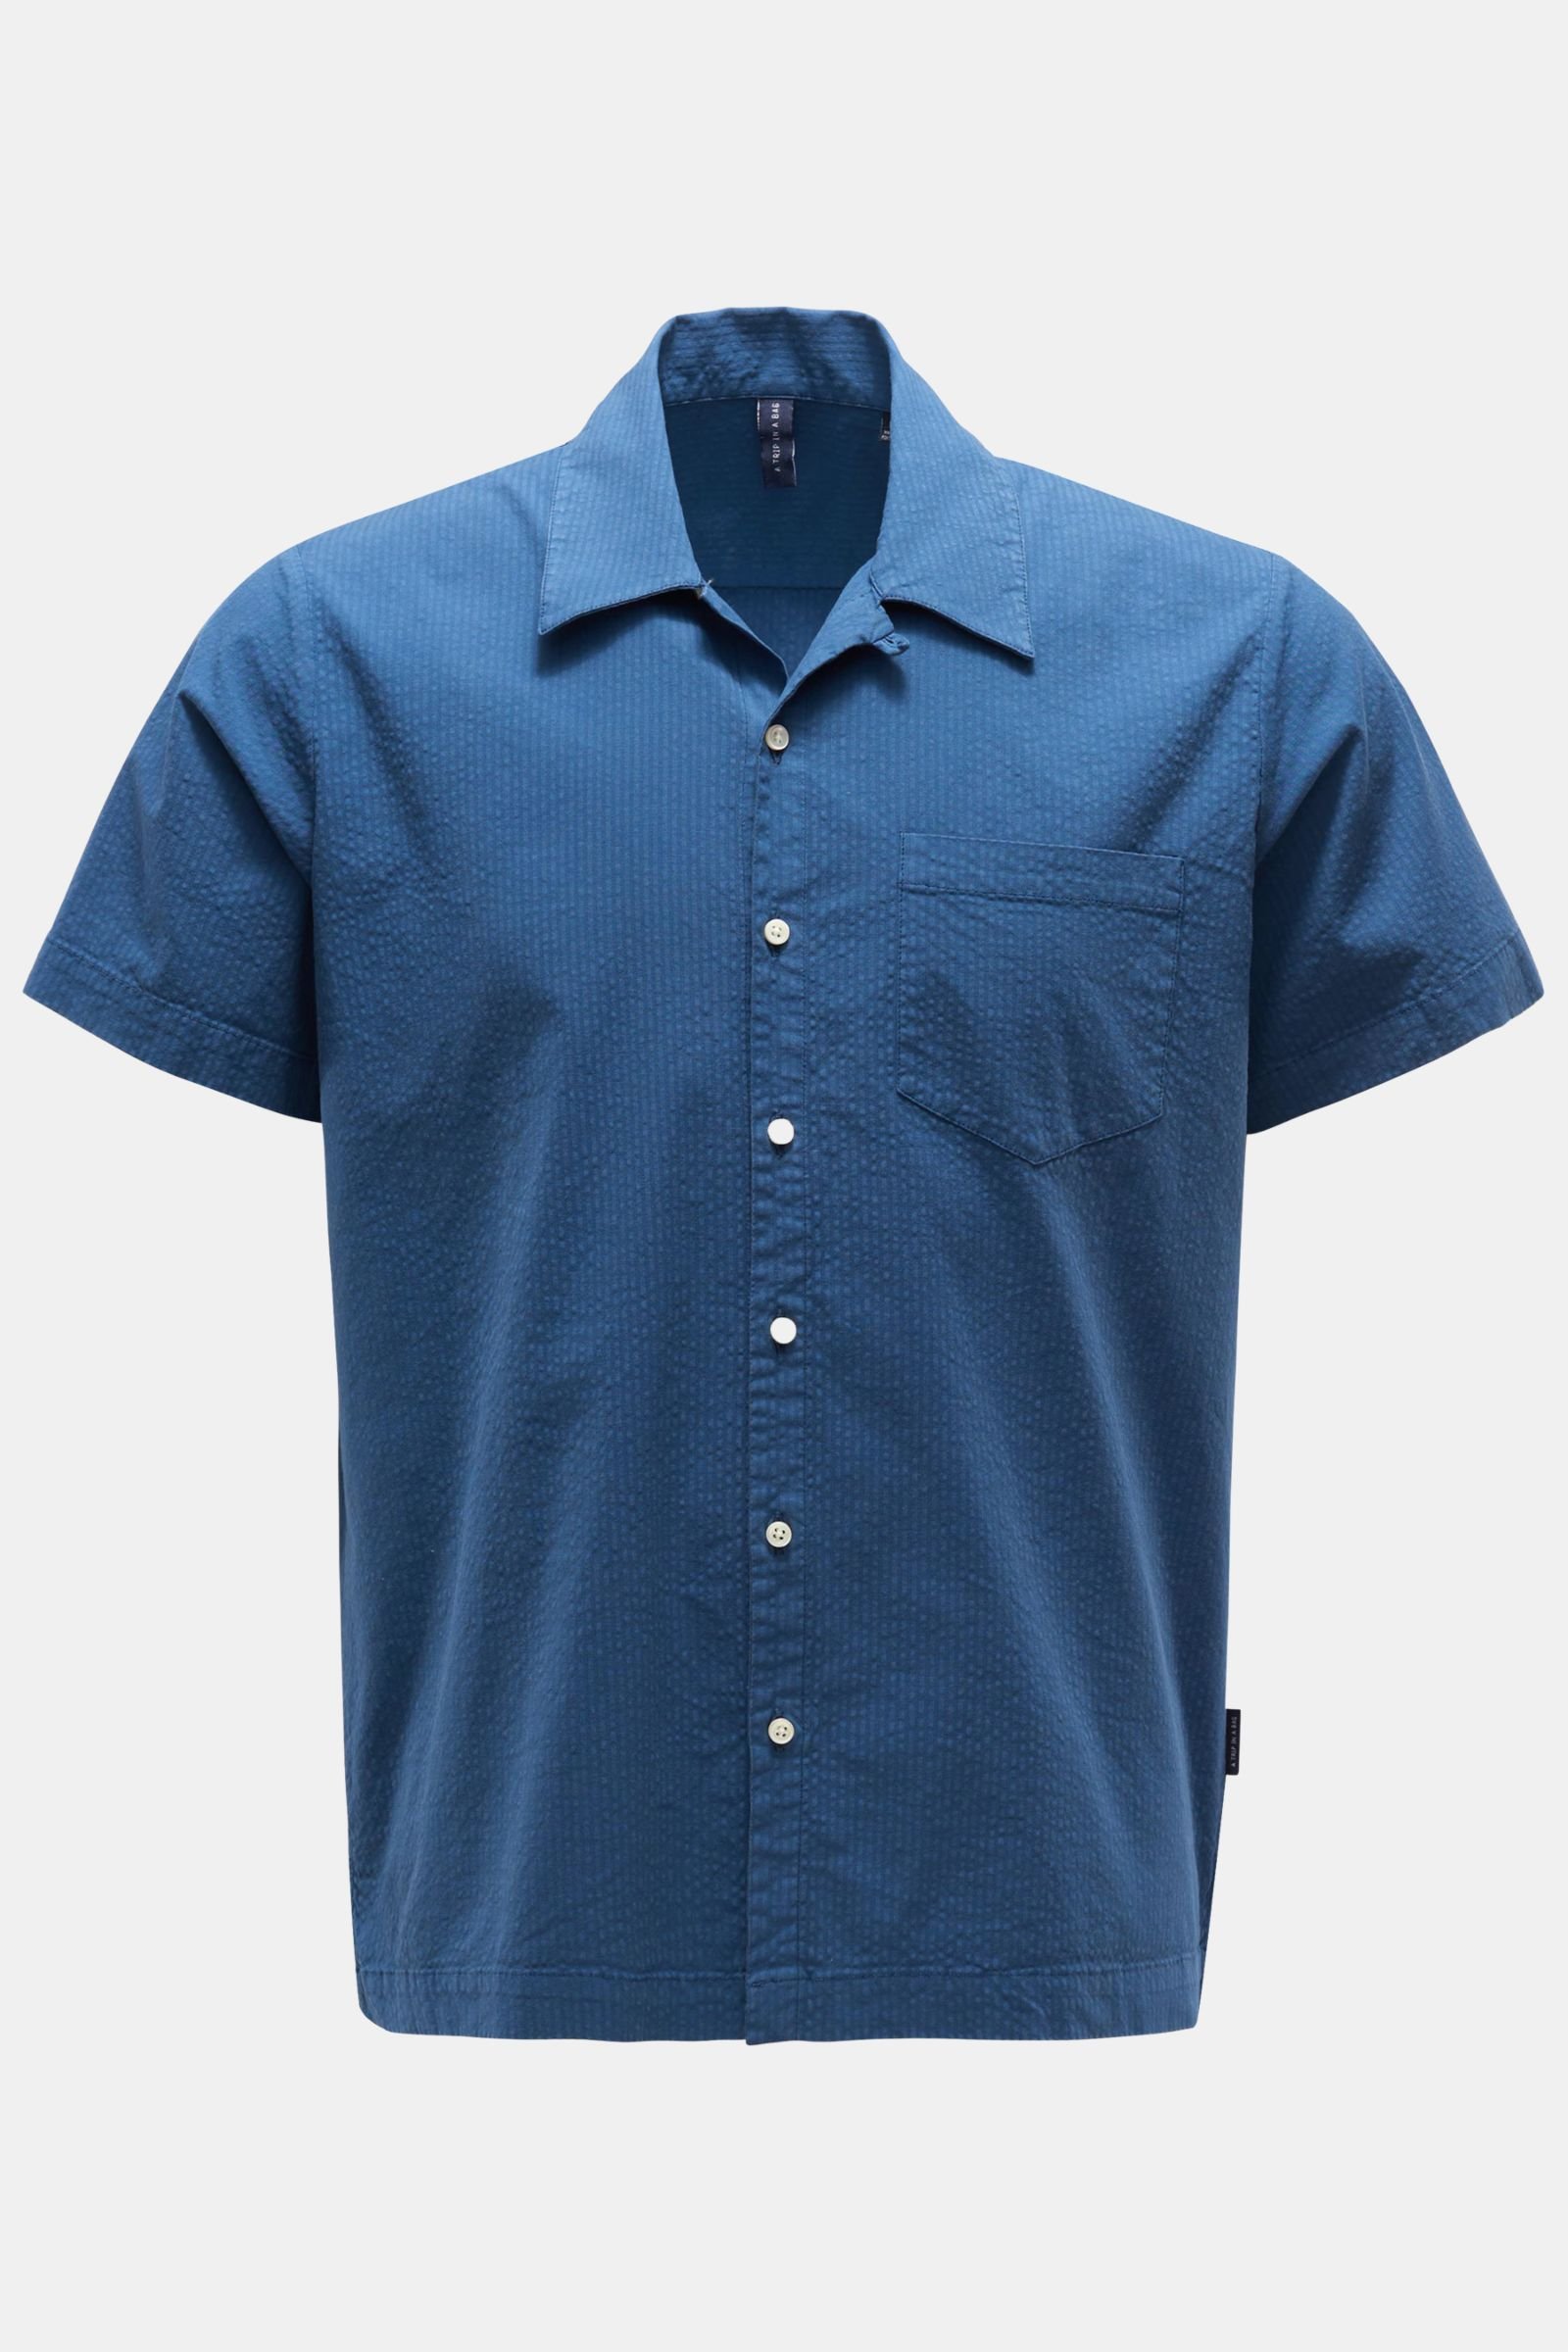 Seersucker short-sleeve shirt 'Seersucker Shirt' Kent collar dark blue